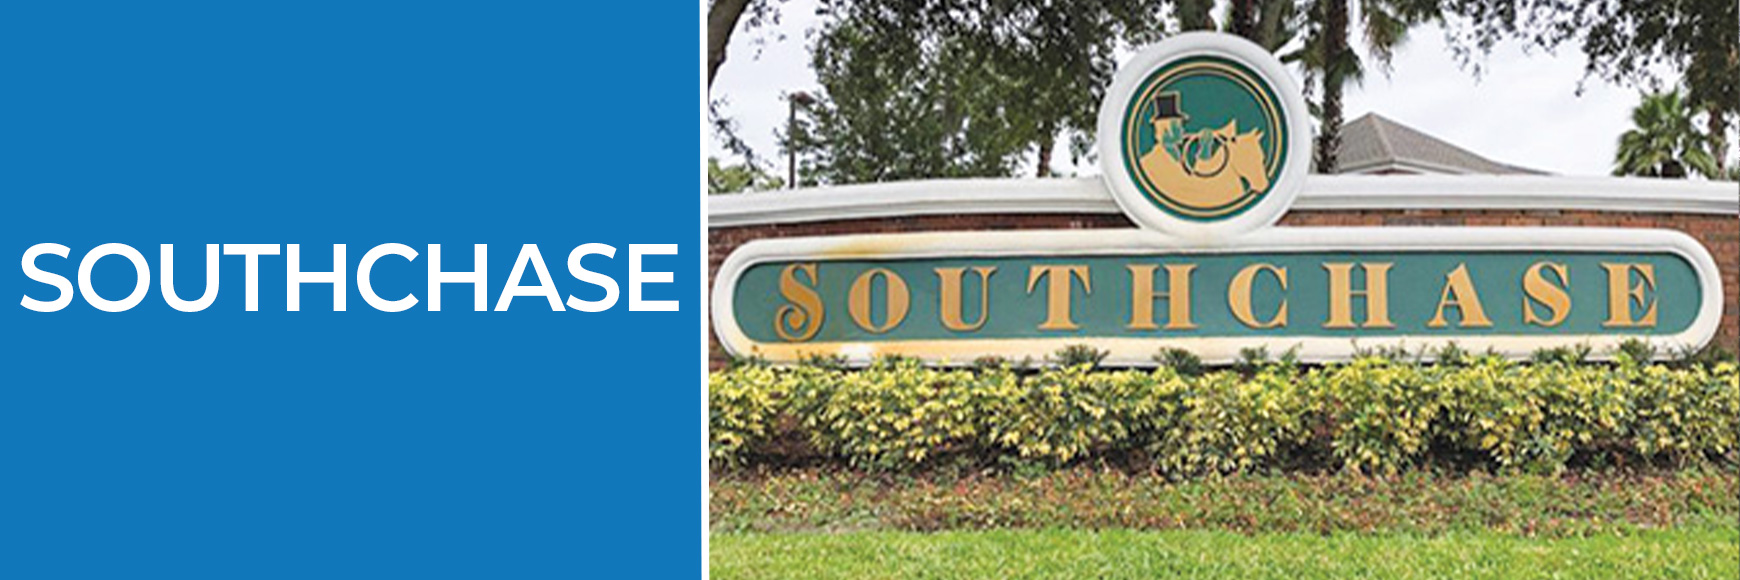 SouthChase Banner-Orlando Homes Sales-Comunidades de Orlando